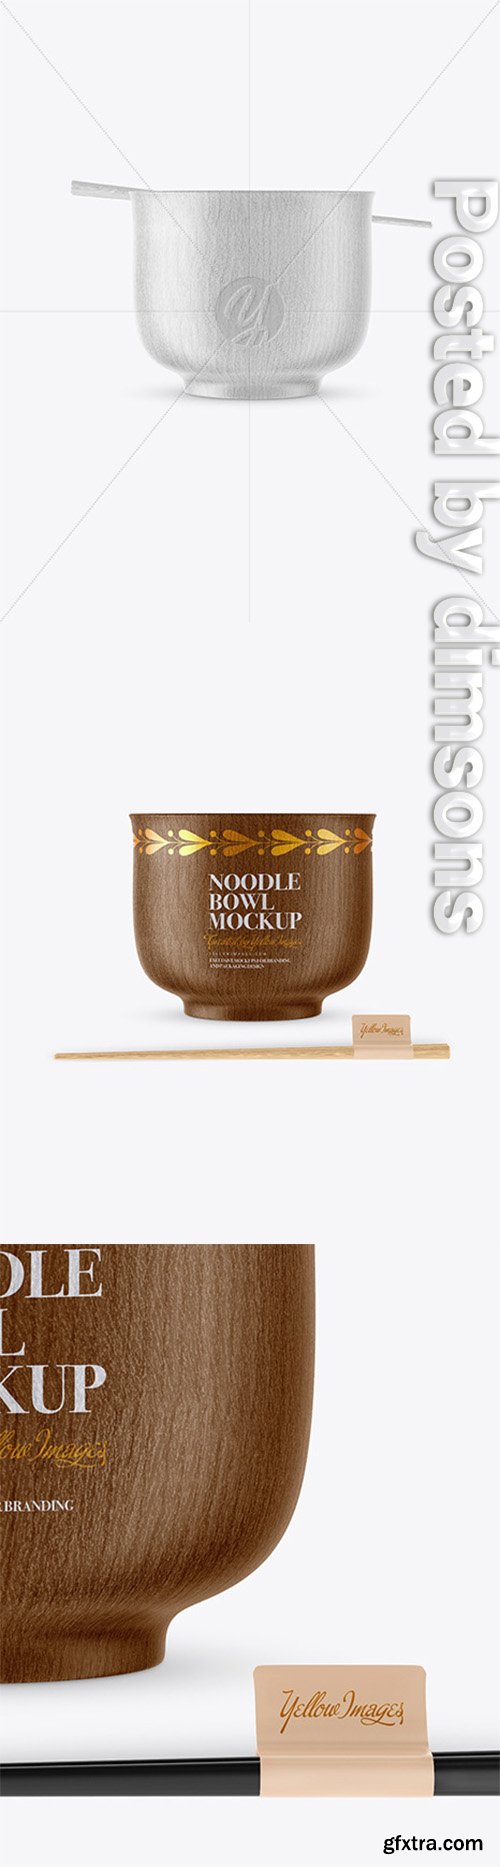 Wooden Noodle Bowl Mockup 51256